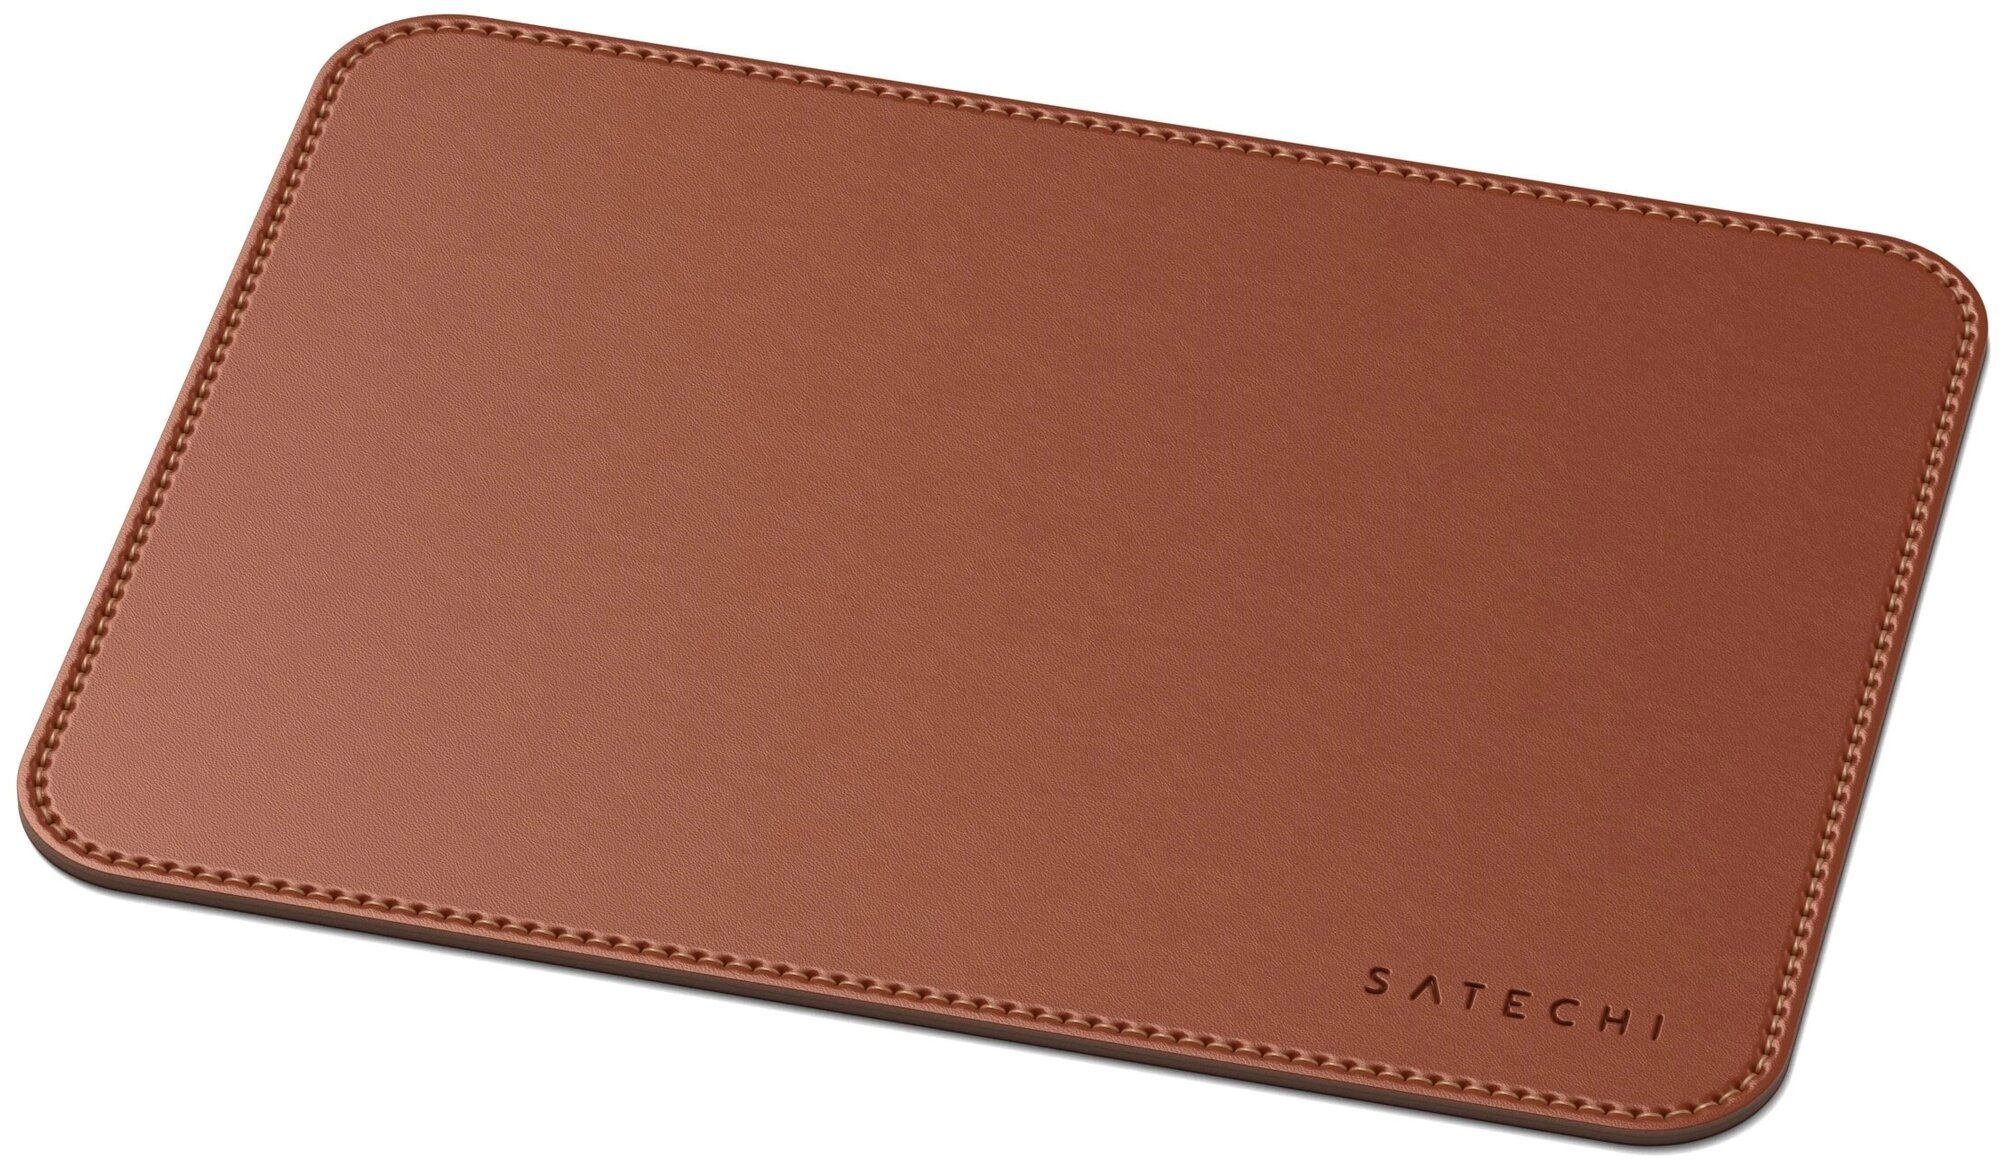 Коврик Satechi Eco Leather Mouse Pad Размер 25 x 19 см. коричневый. коврик игровой dream machines mouse pad l